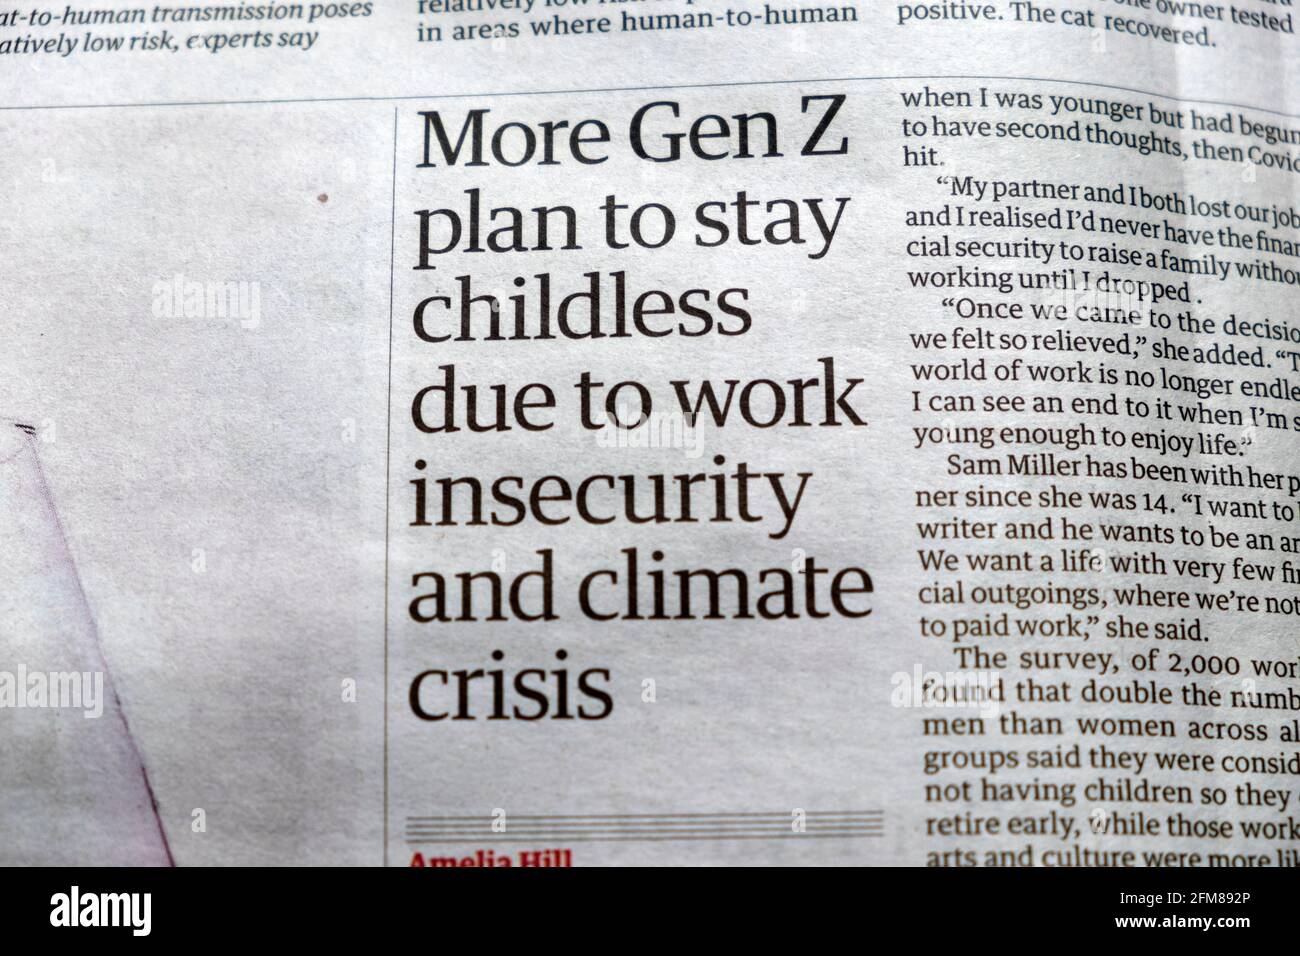 'Plan de génération Z plus pour rester sans enfant en raison du travail L'insécurité et la crise climatique" Guardian journal article principal 24 avril 2021 Londres Angleterre Royaume-Uni Banque D'Images